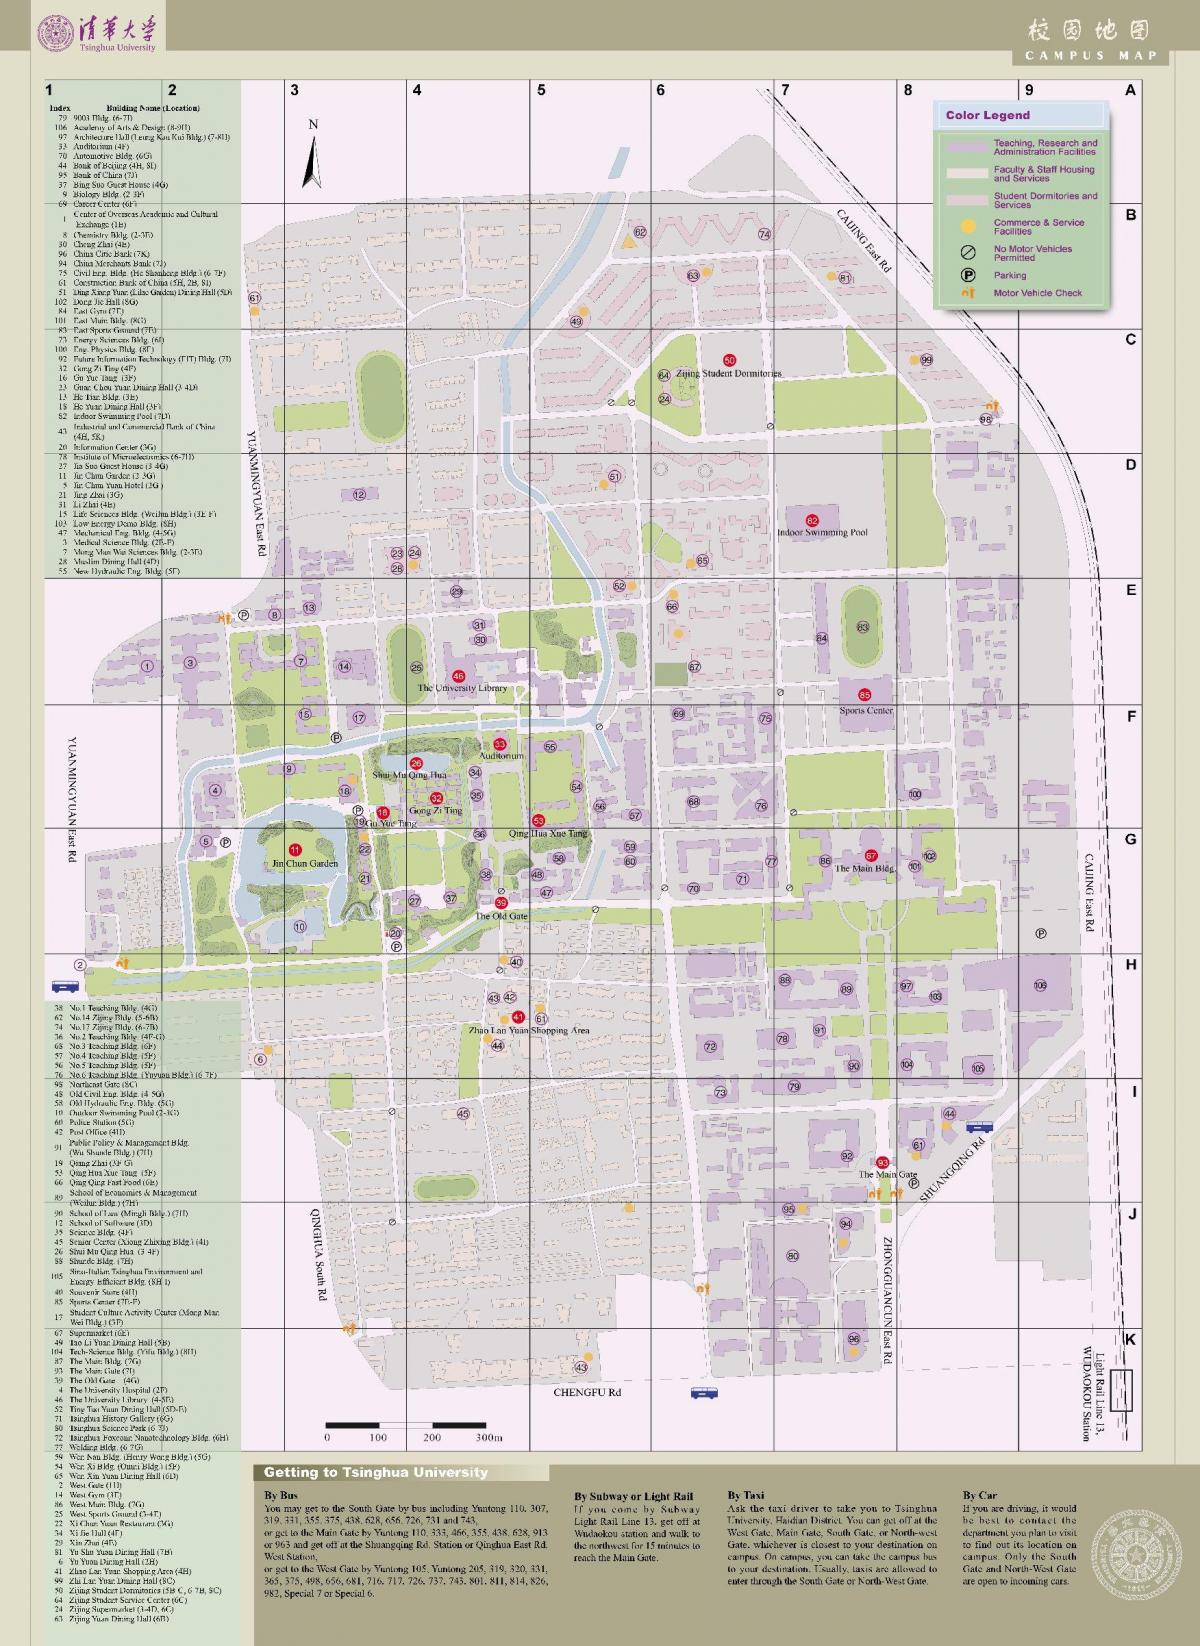 мапу кампуса Тсингхуа 